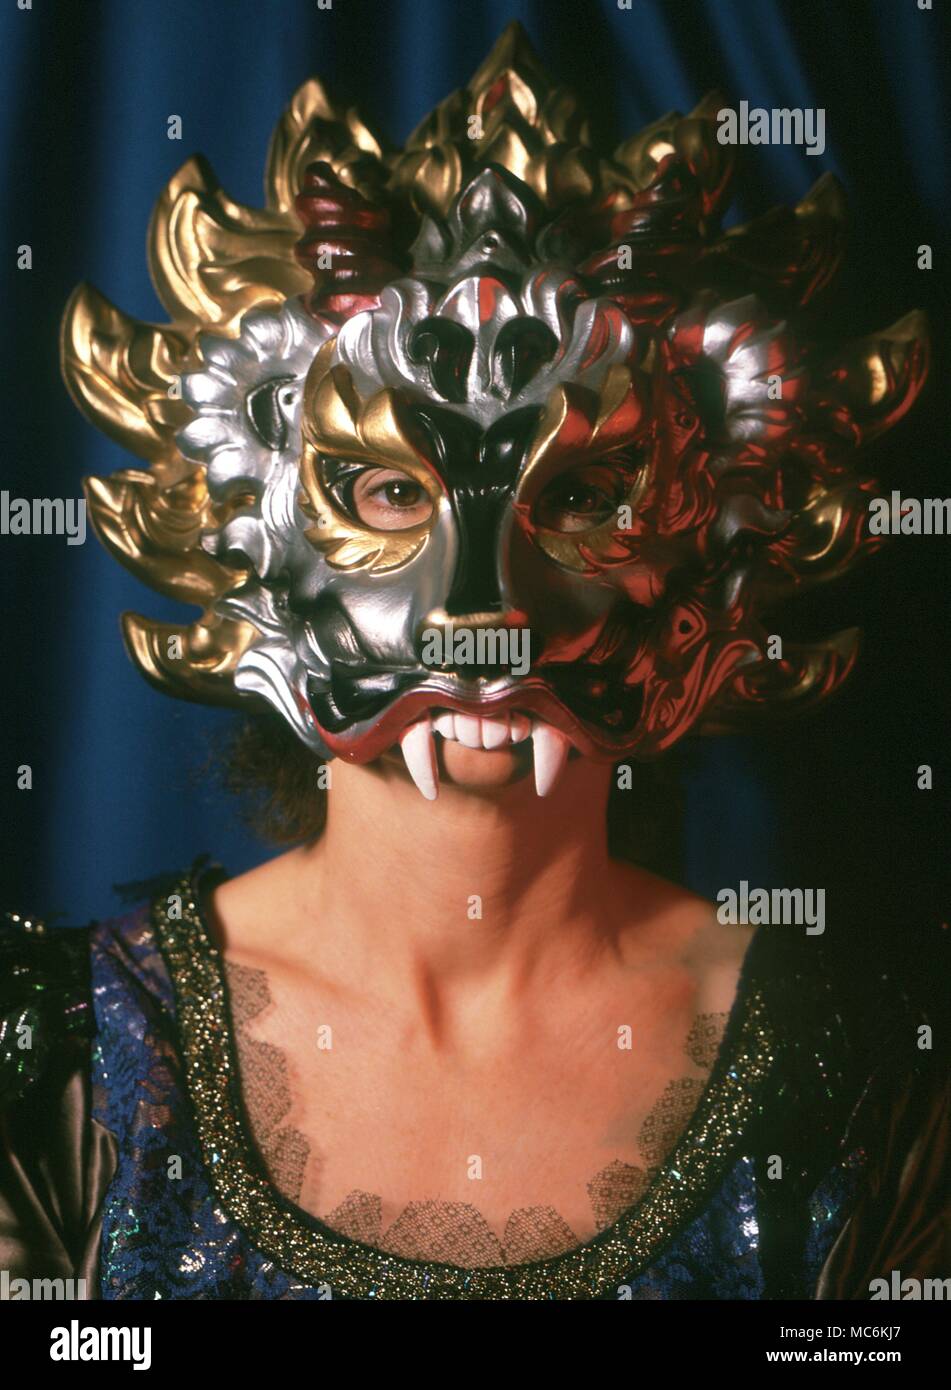 Máscara Veneciana. Chica que llevaba la máscara de carnaval veneciano. Foto de stock